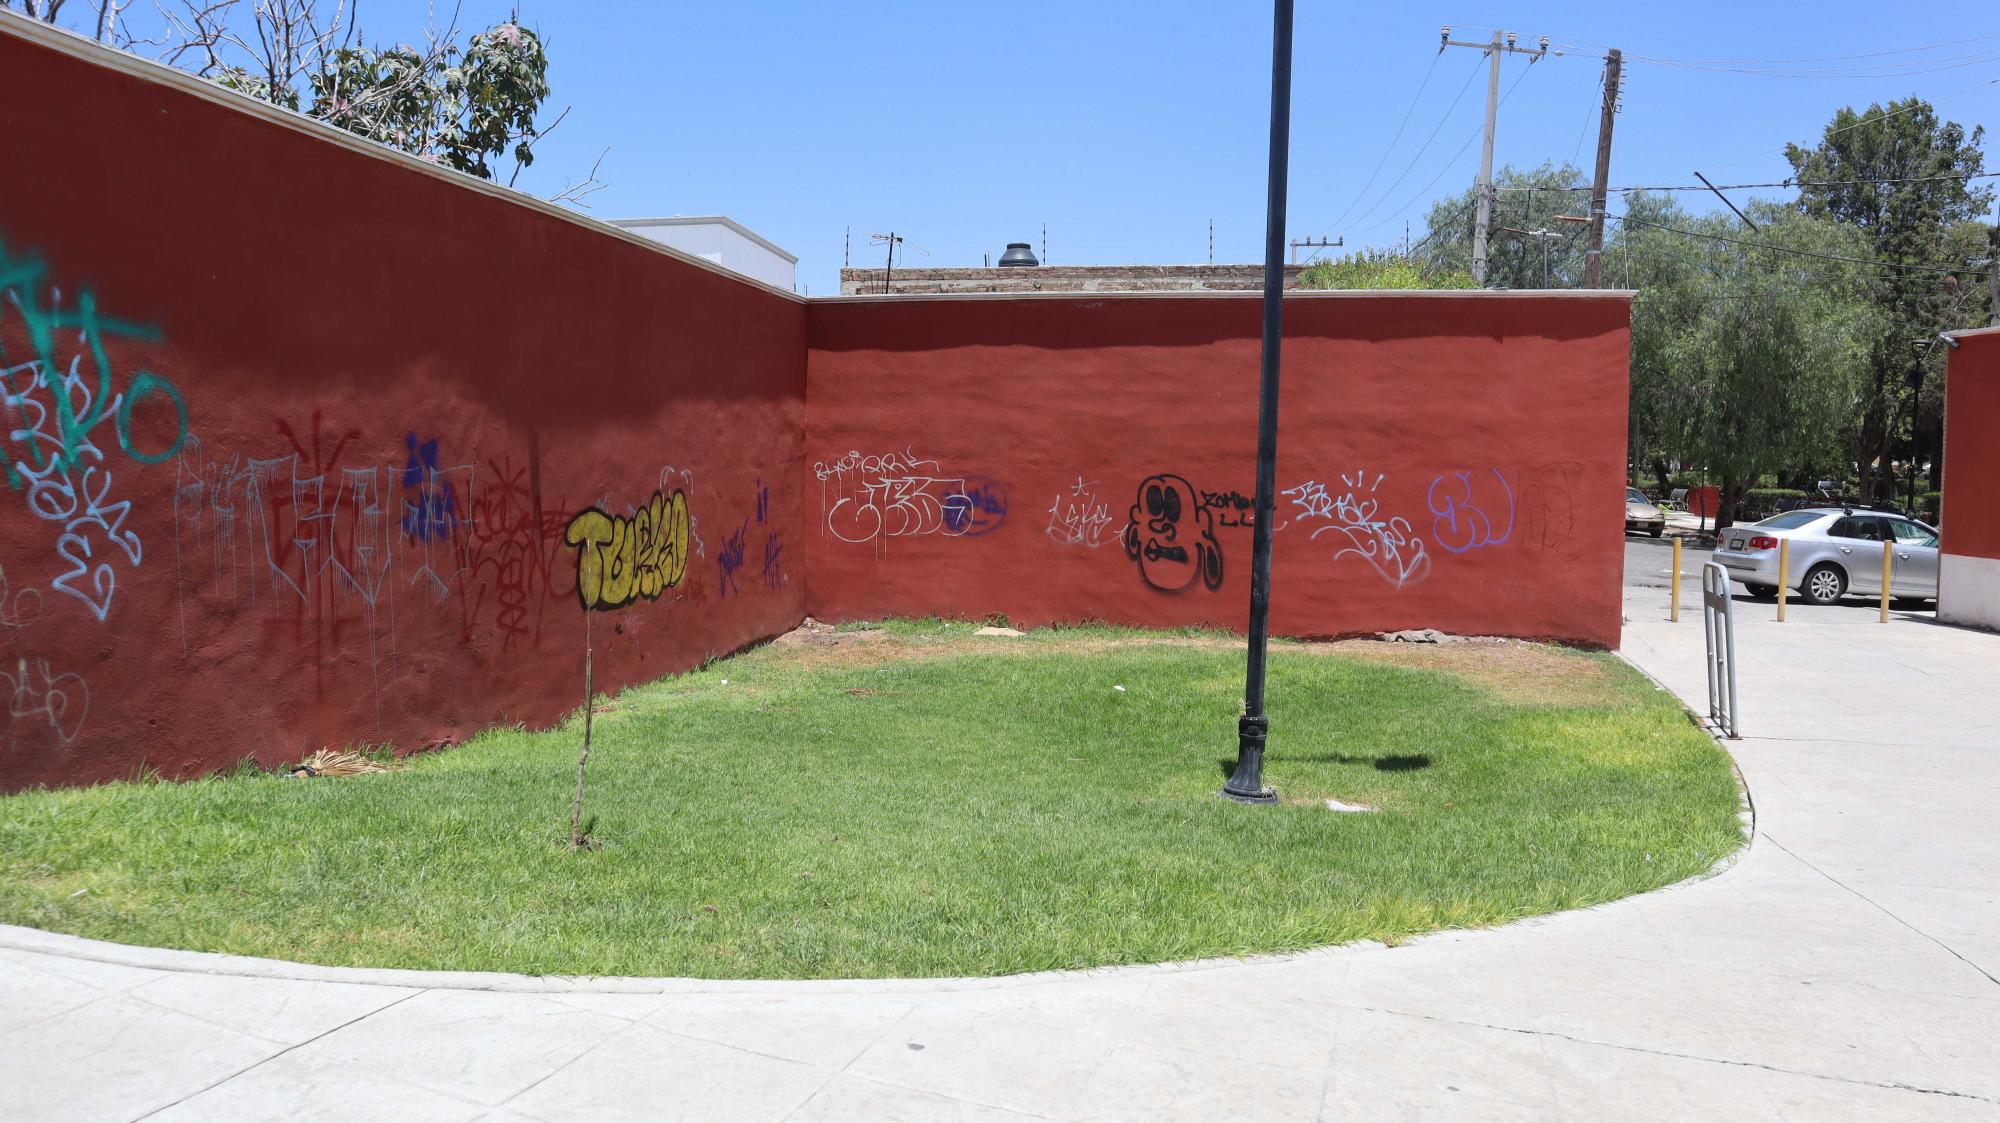 $!Vista de la Plaza Juárez tras ser pintada recientemente, pero ya con nuevos grafitis.